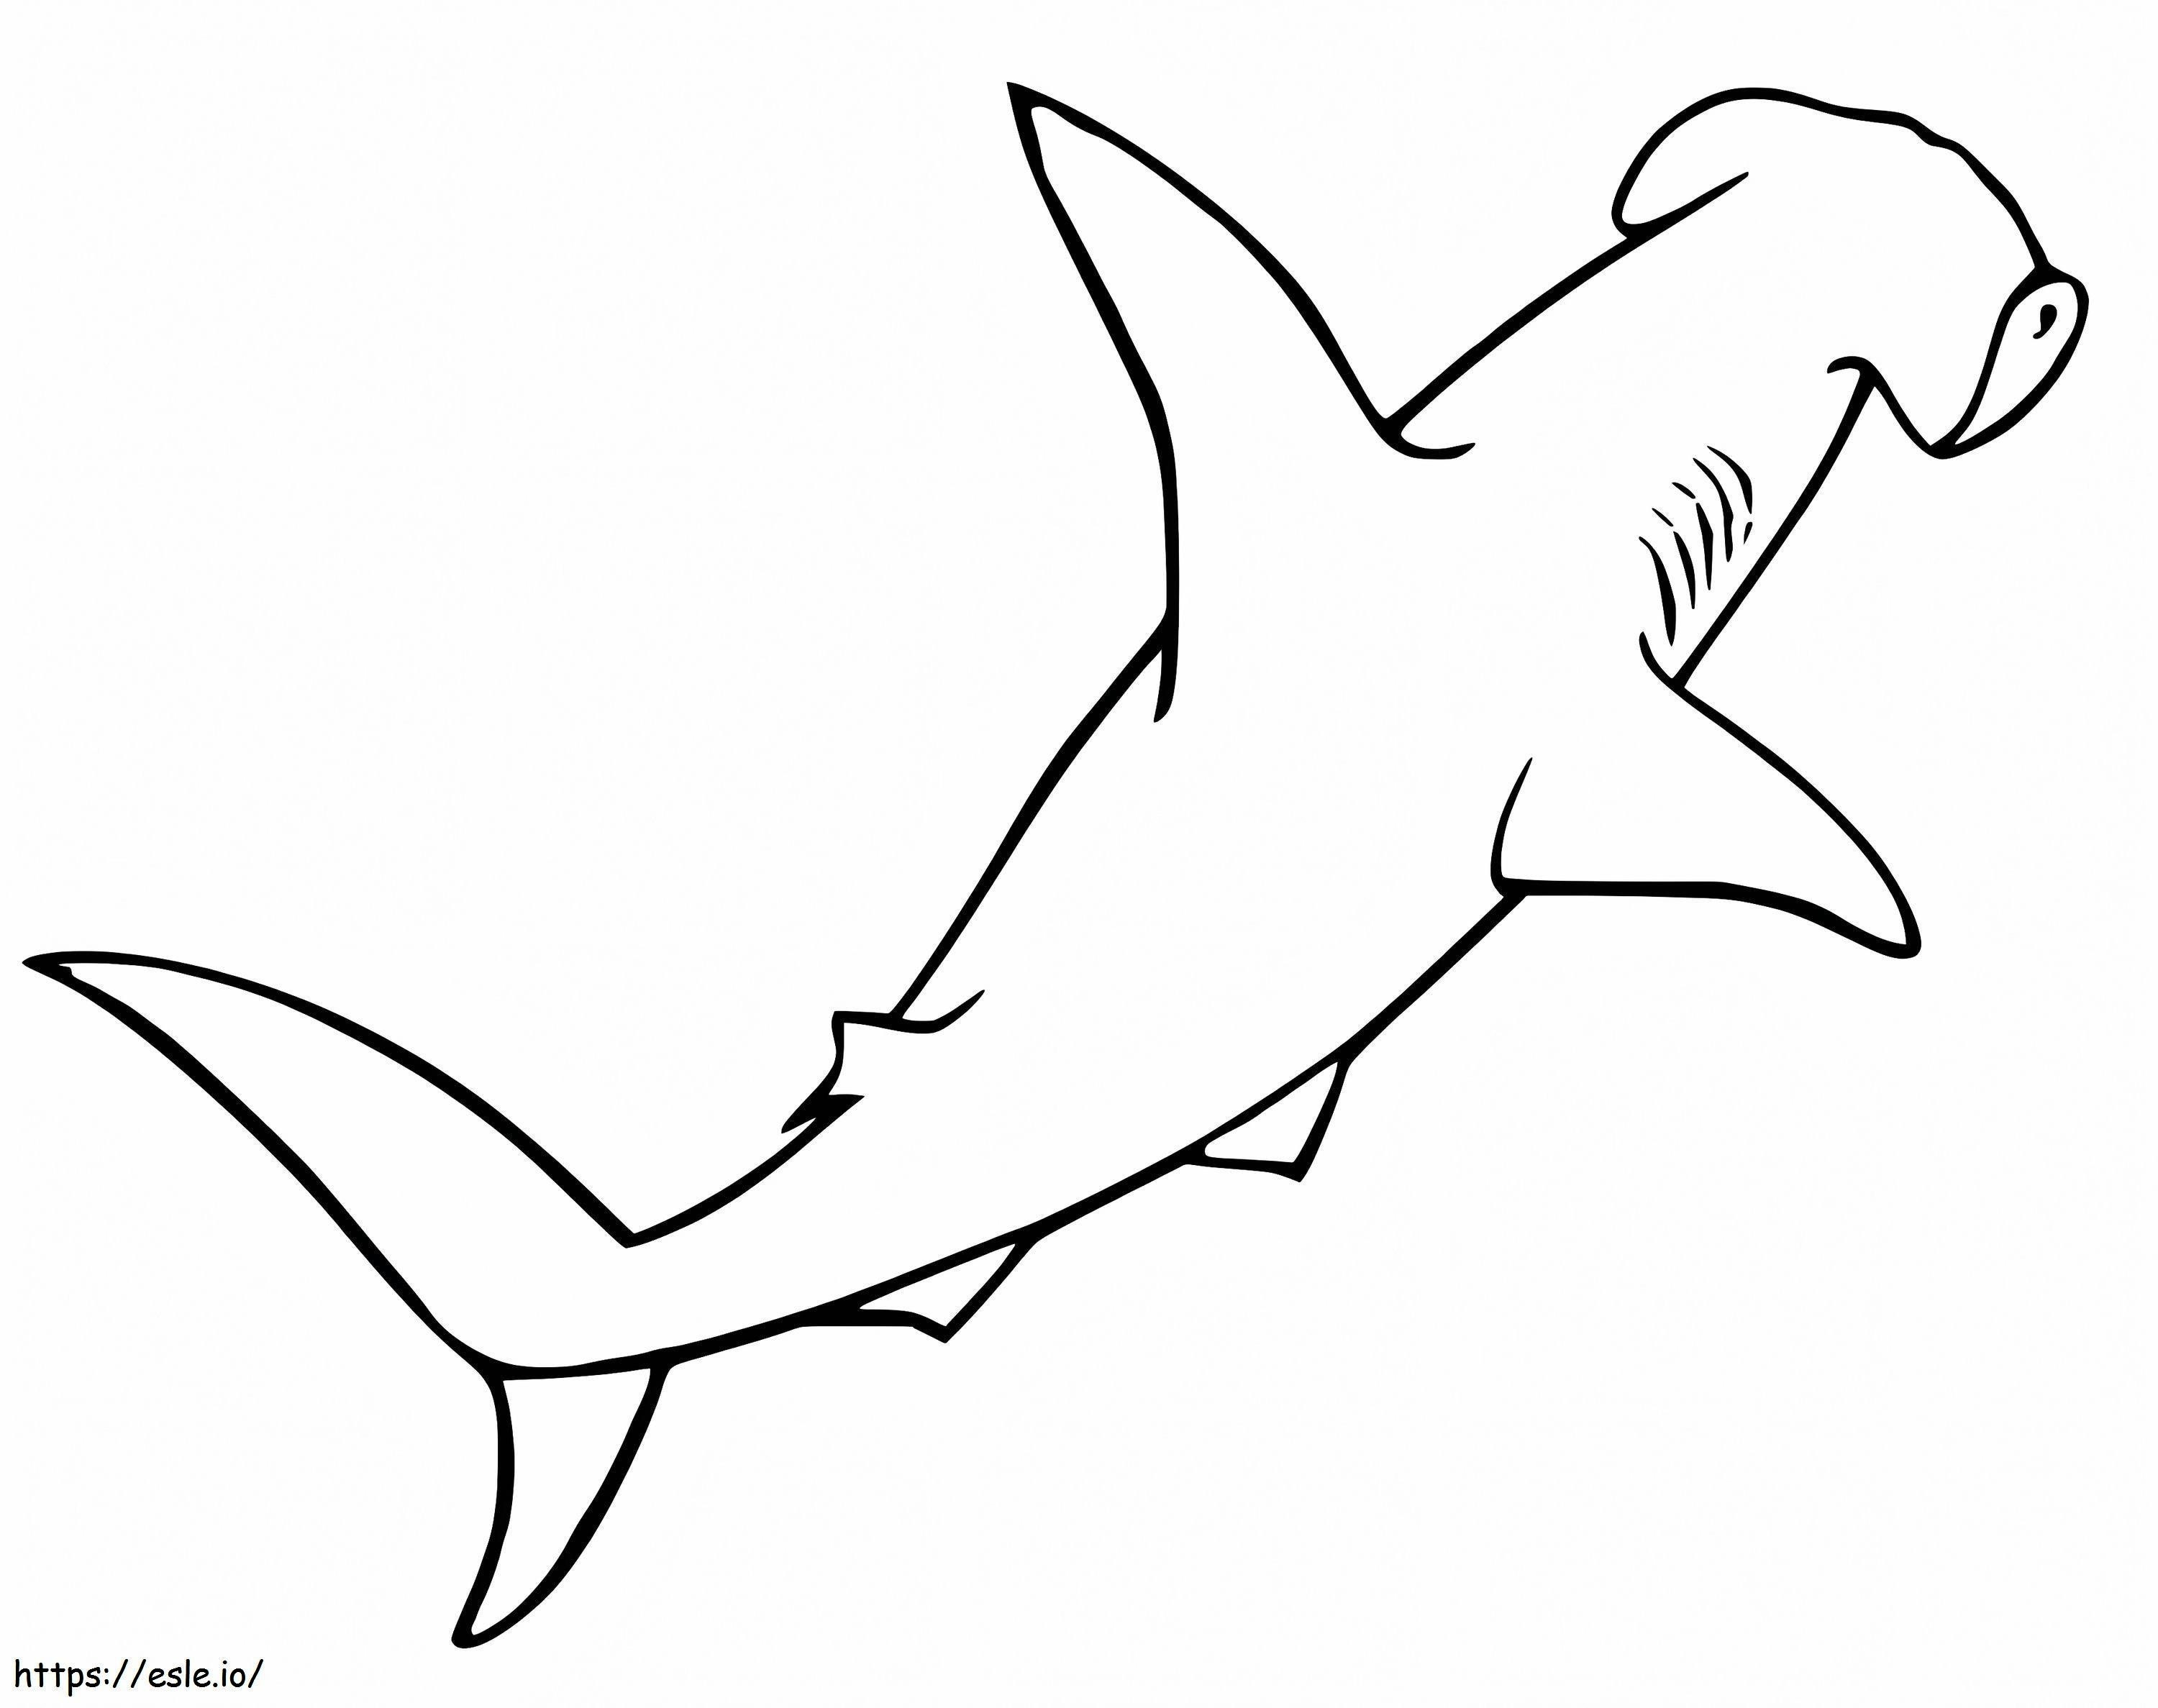 Çekiçbaş Köpekbalığı 1 boyama